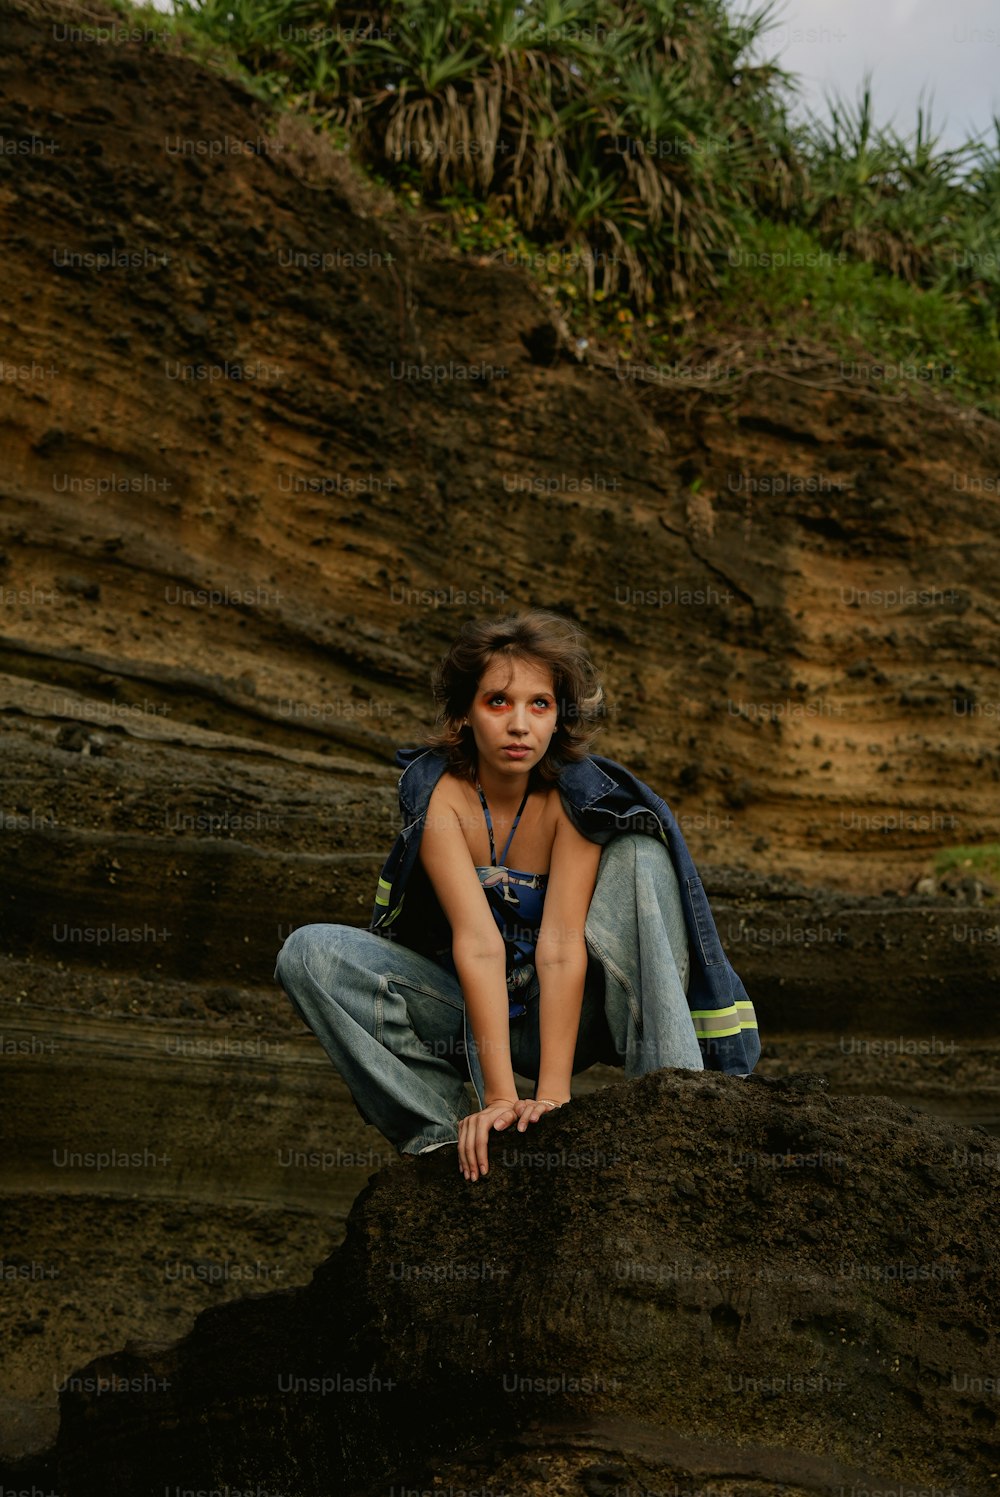 어린 소녀가 바위 위에 앉아 있다